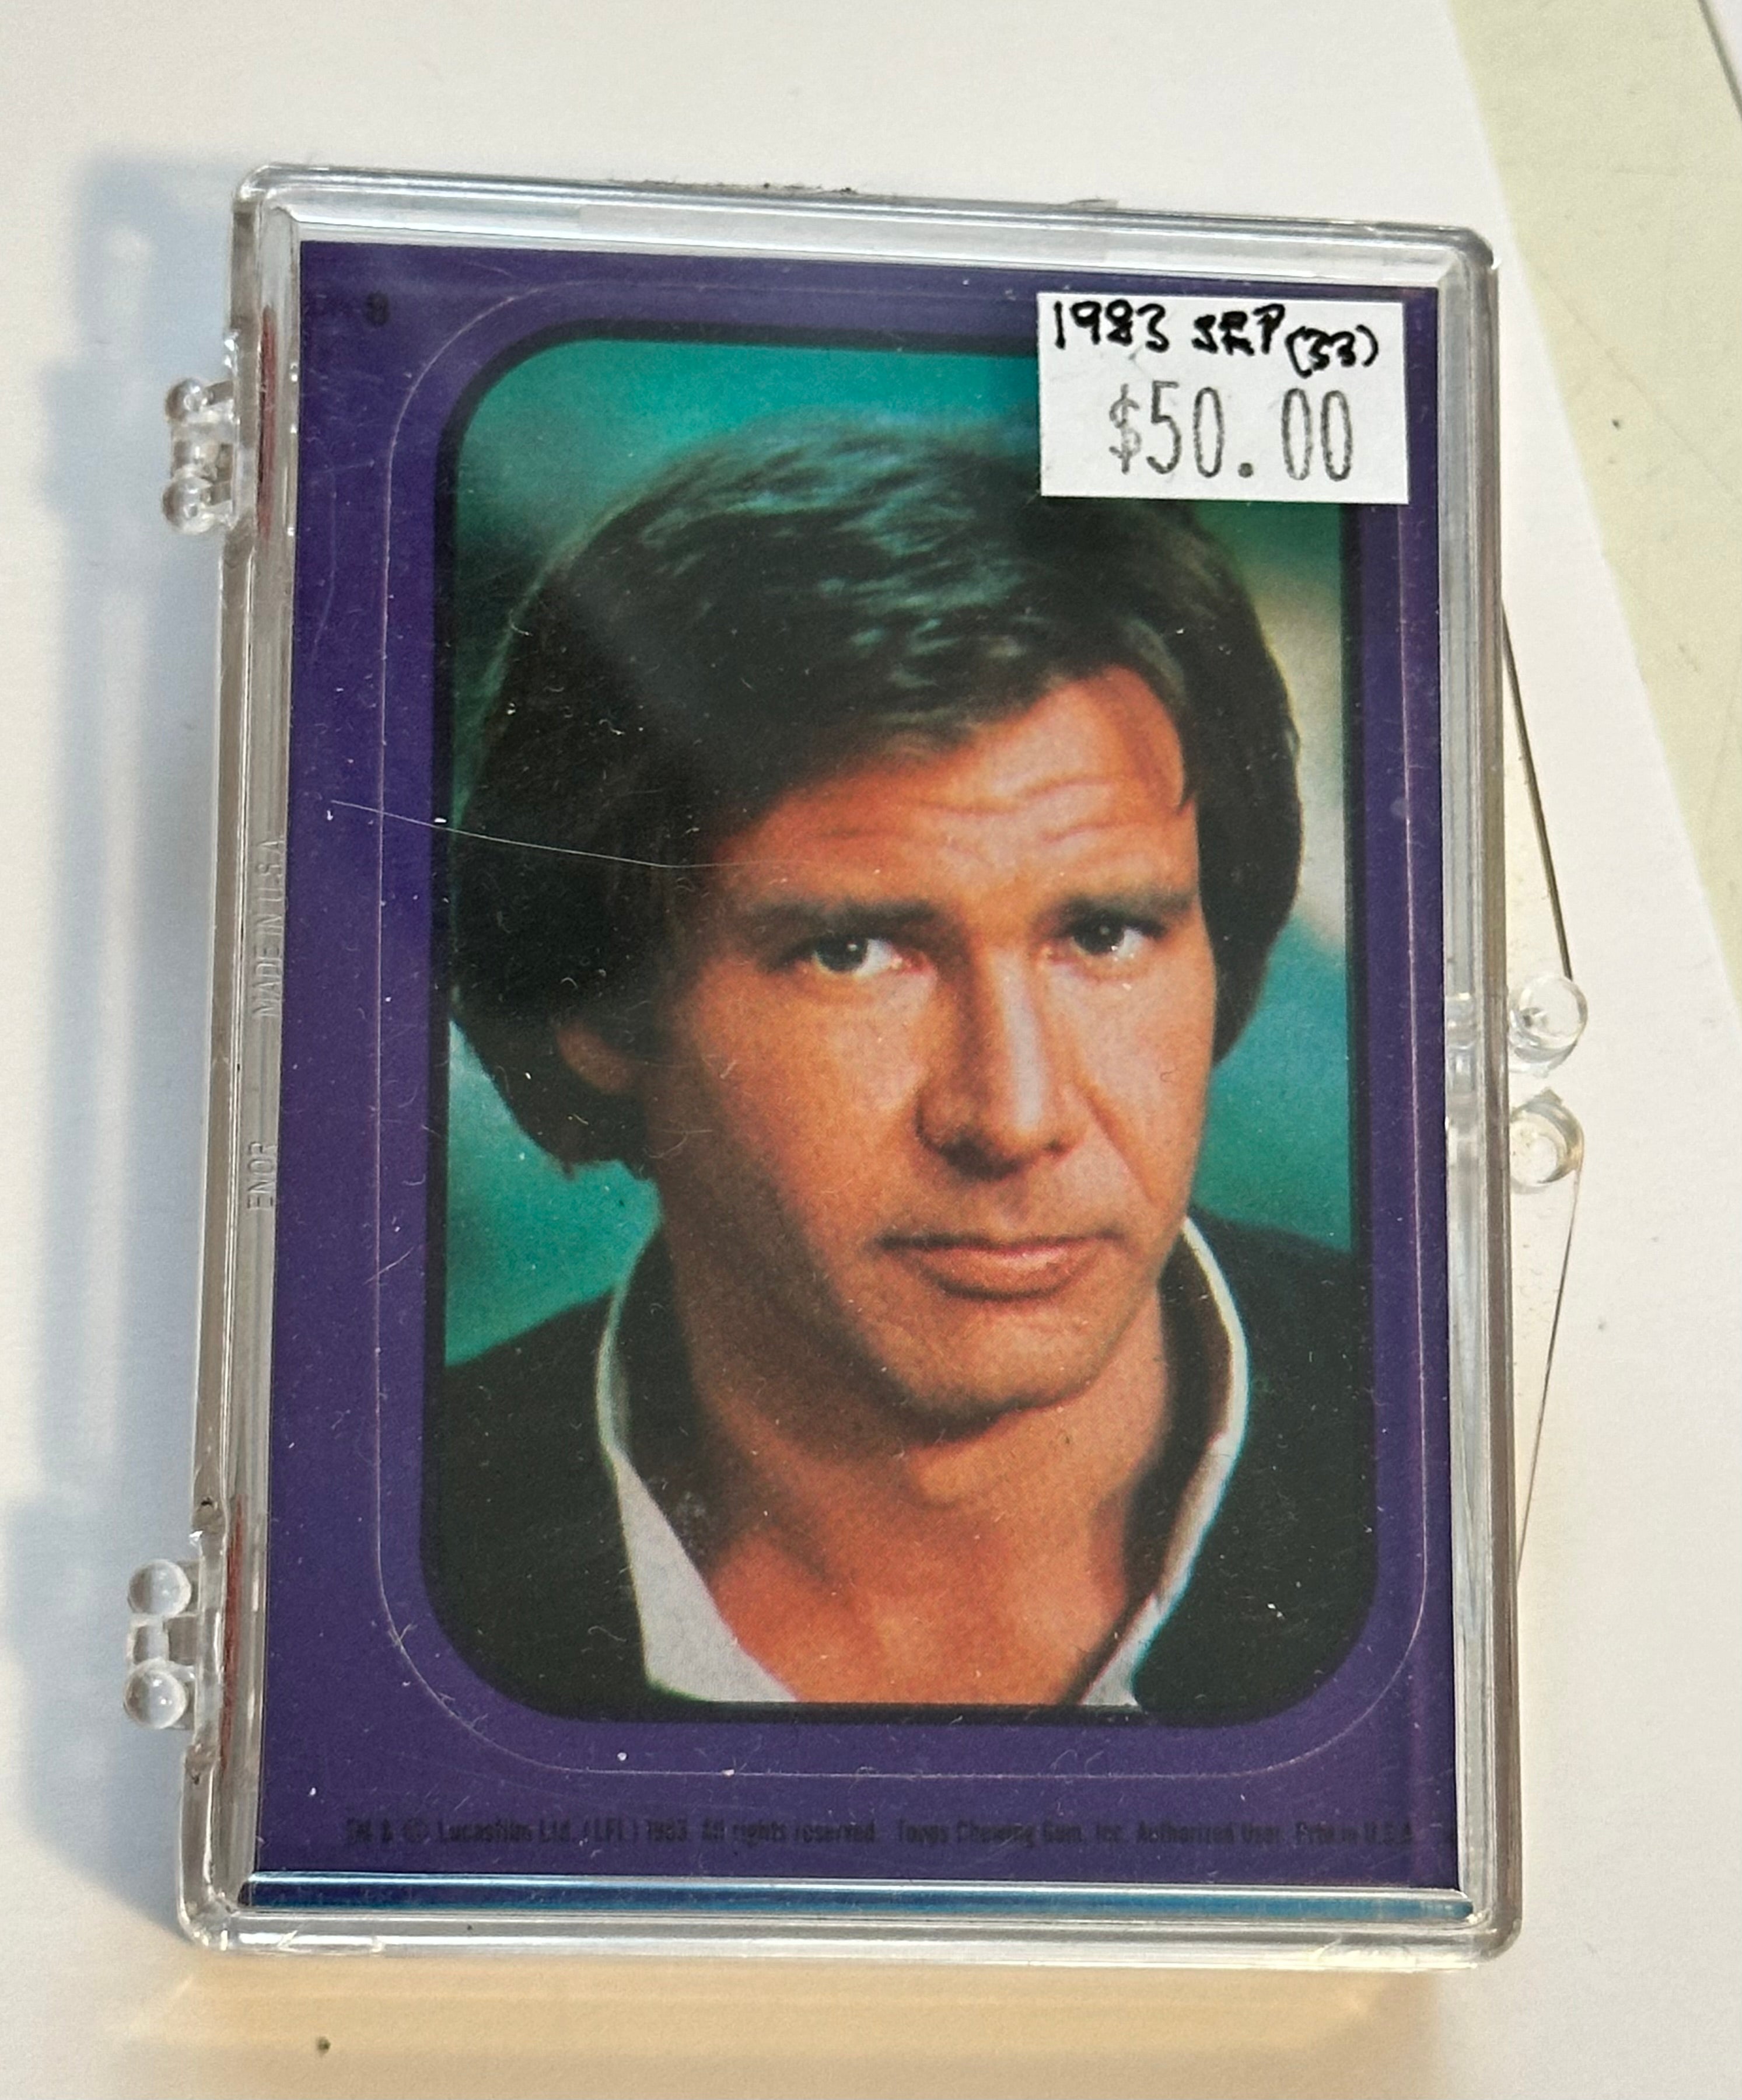 Star Wars return of the Jedi stickers card set 1983